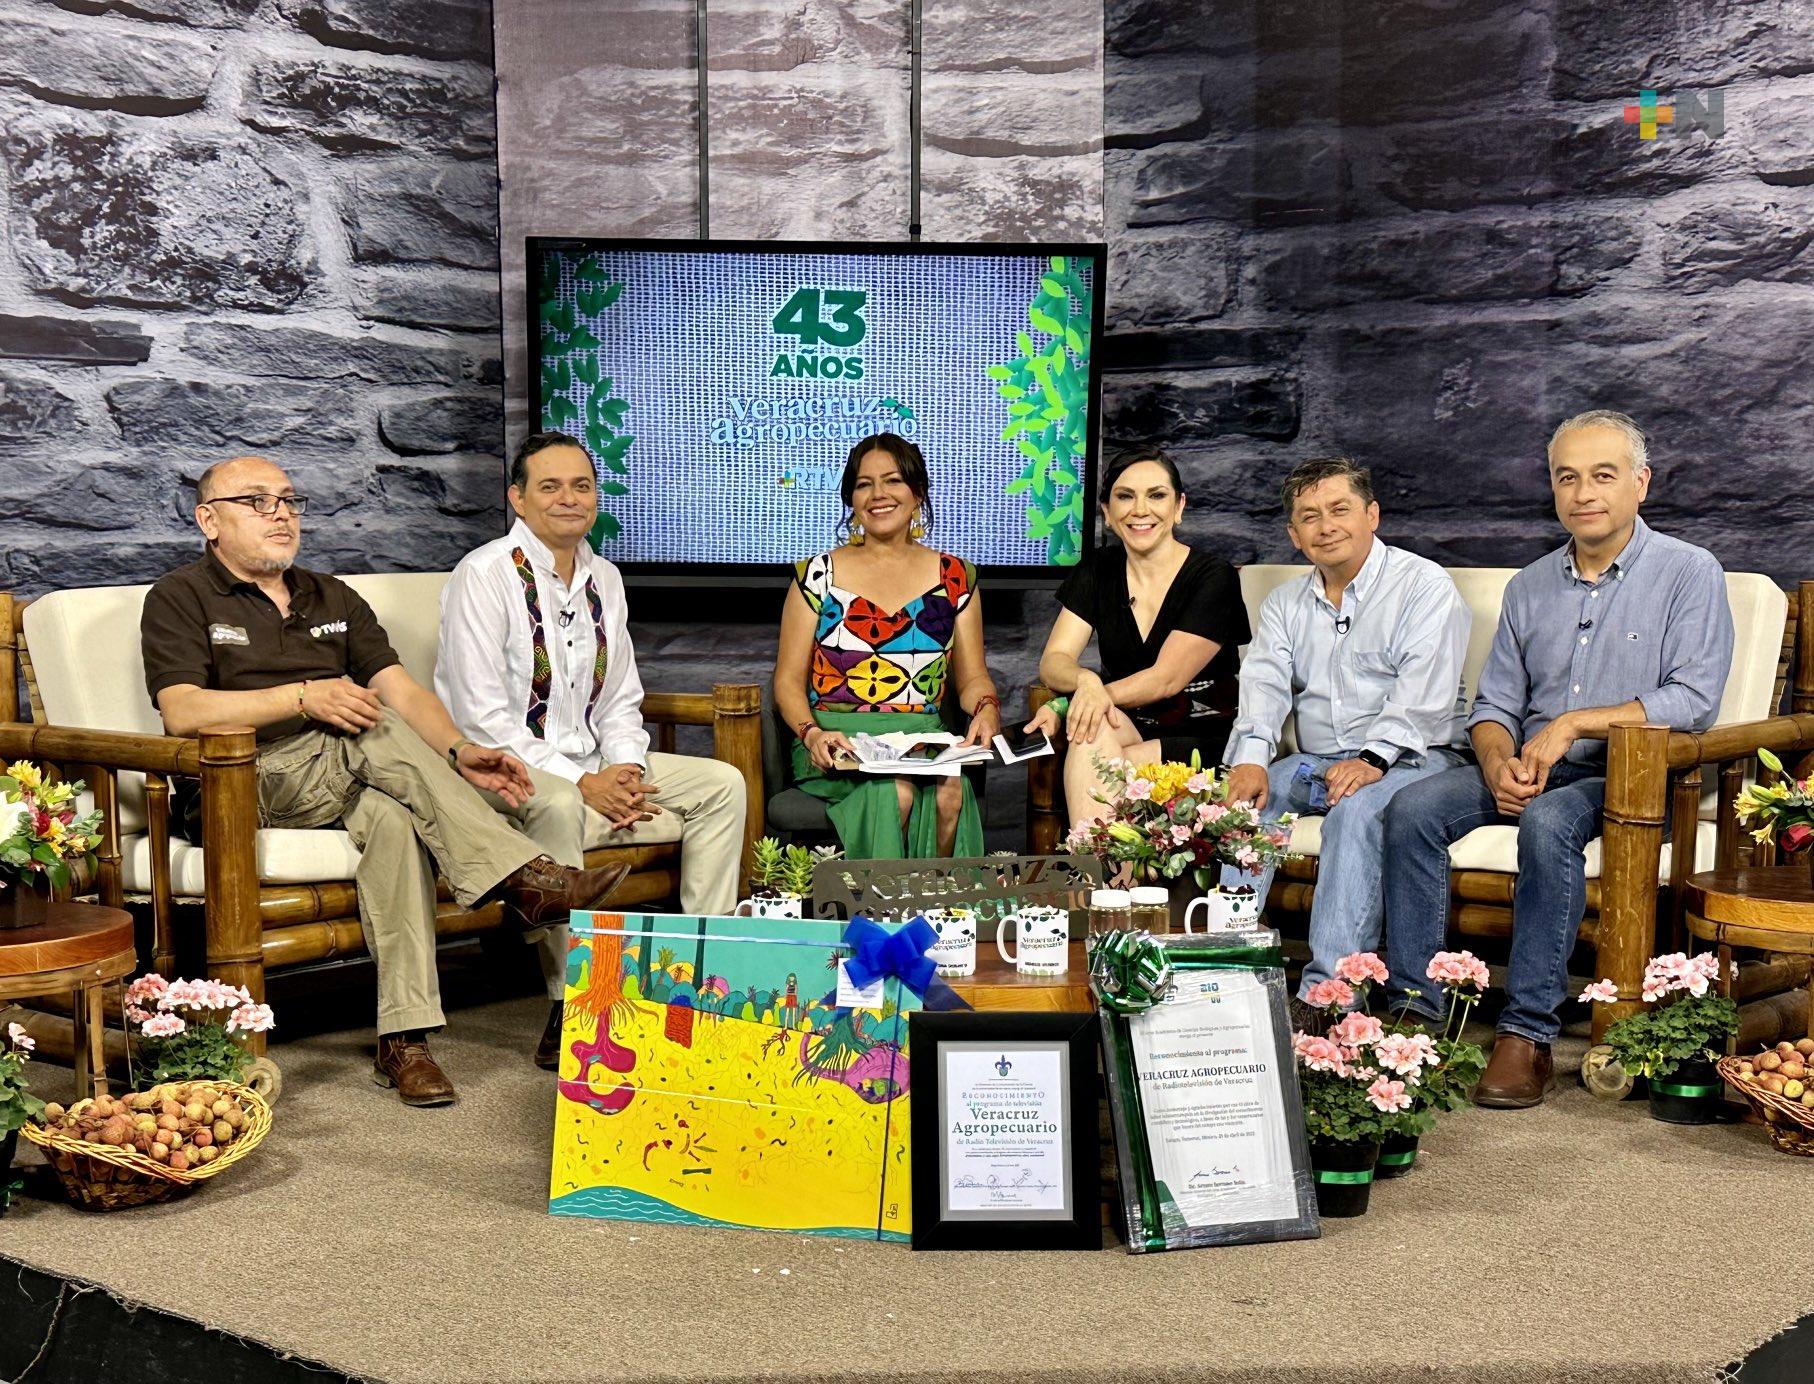 «Veracruz agropecuario» festeja su exitoso 43 aniversario, en RTV